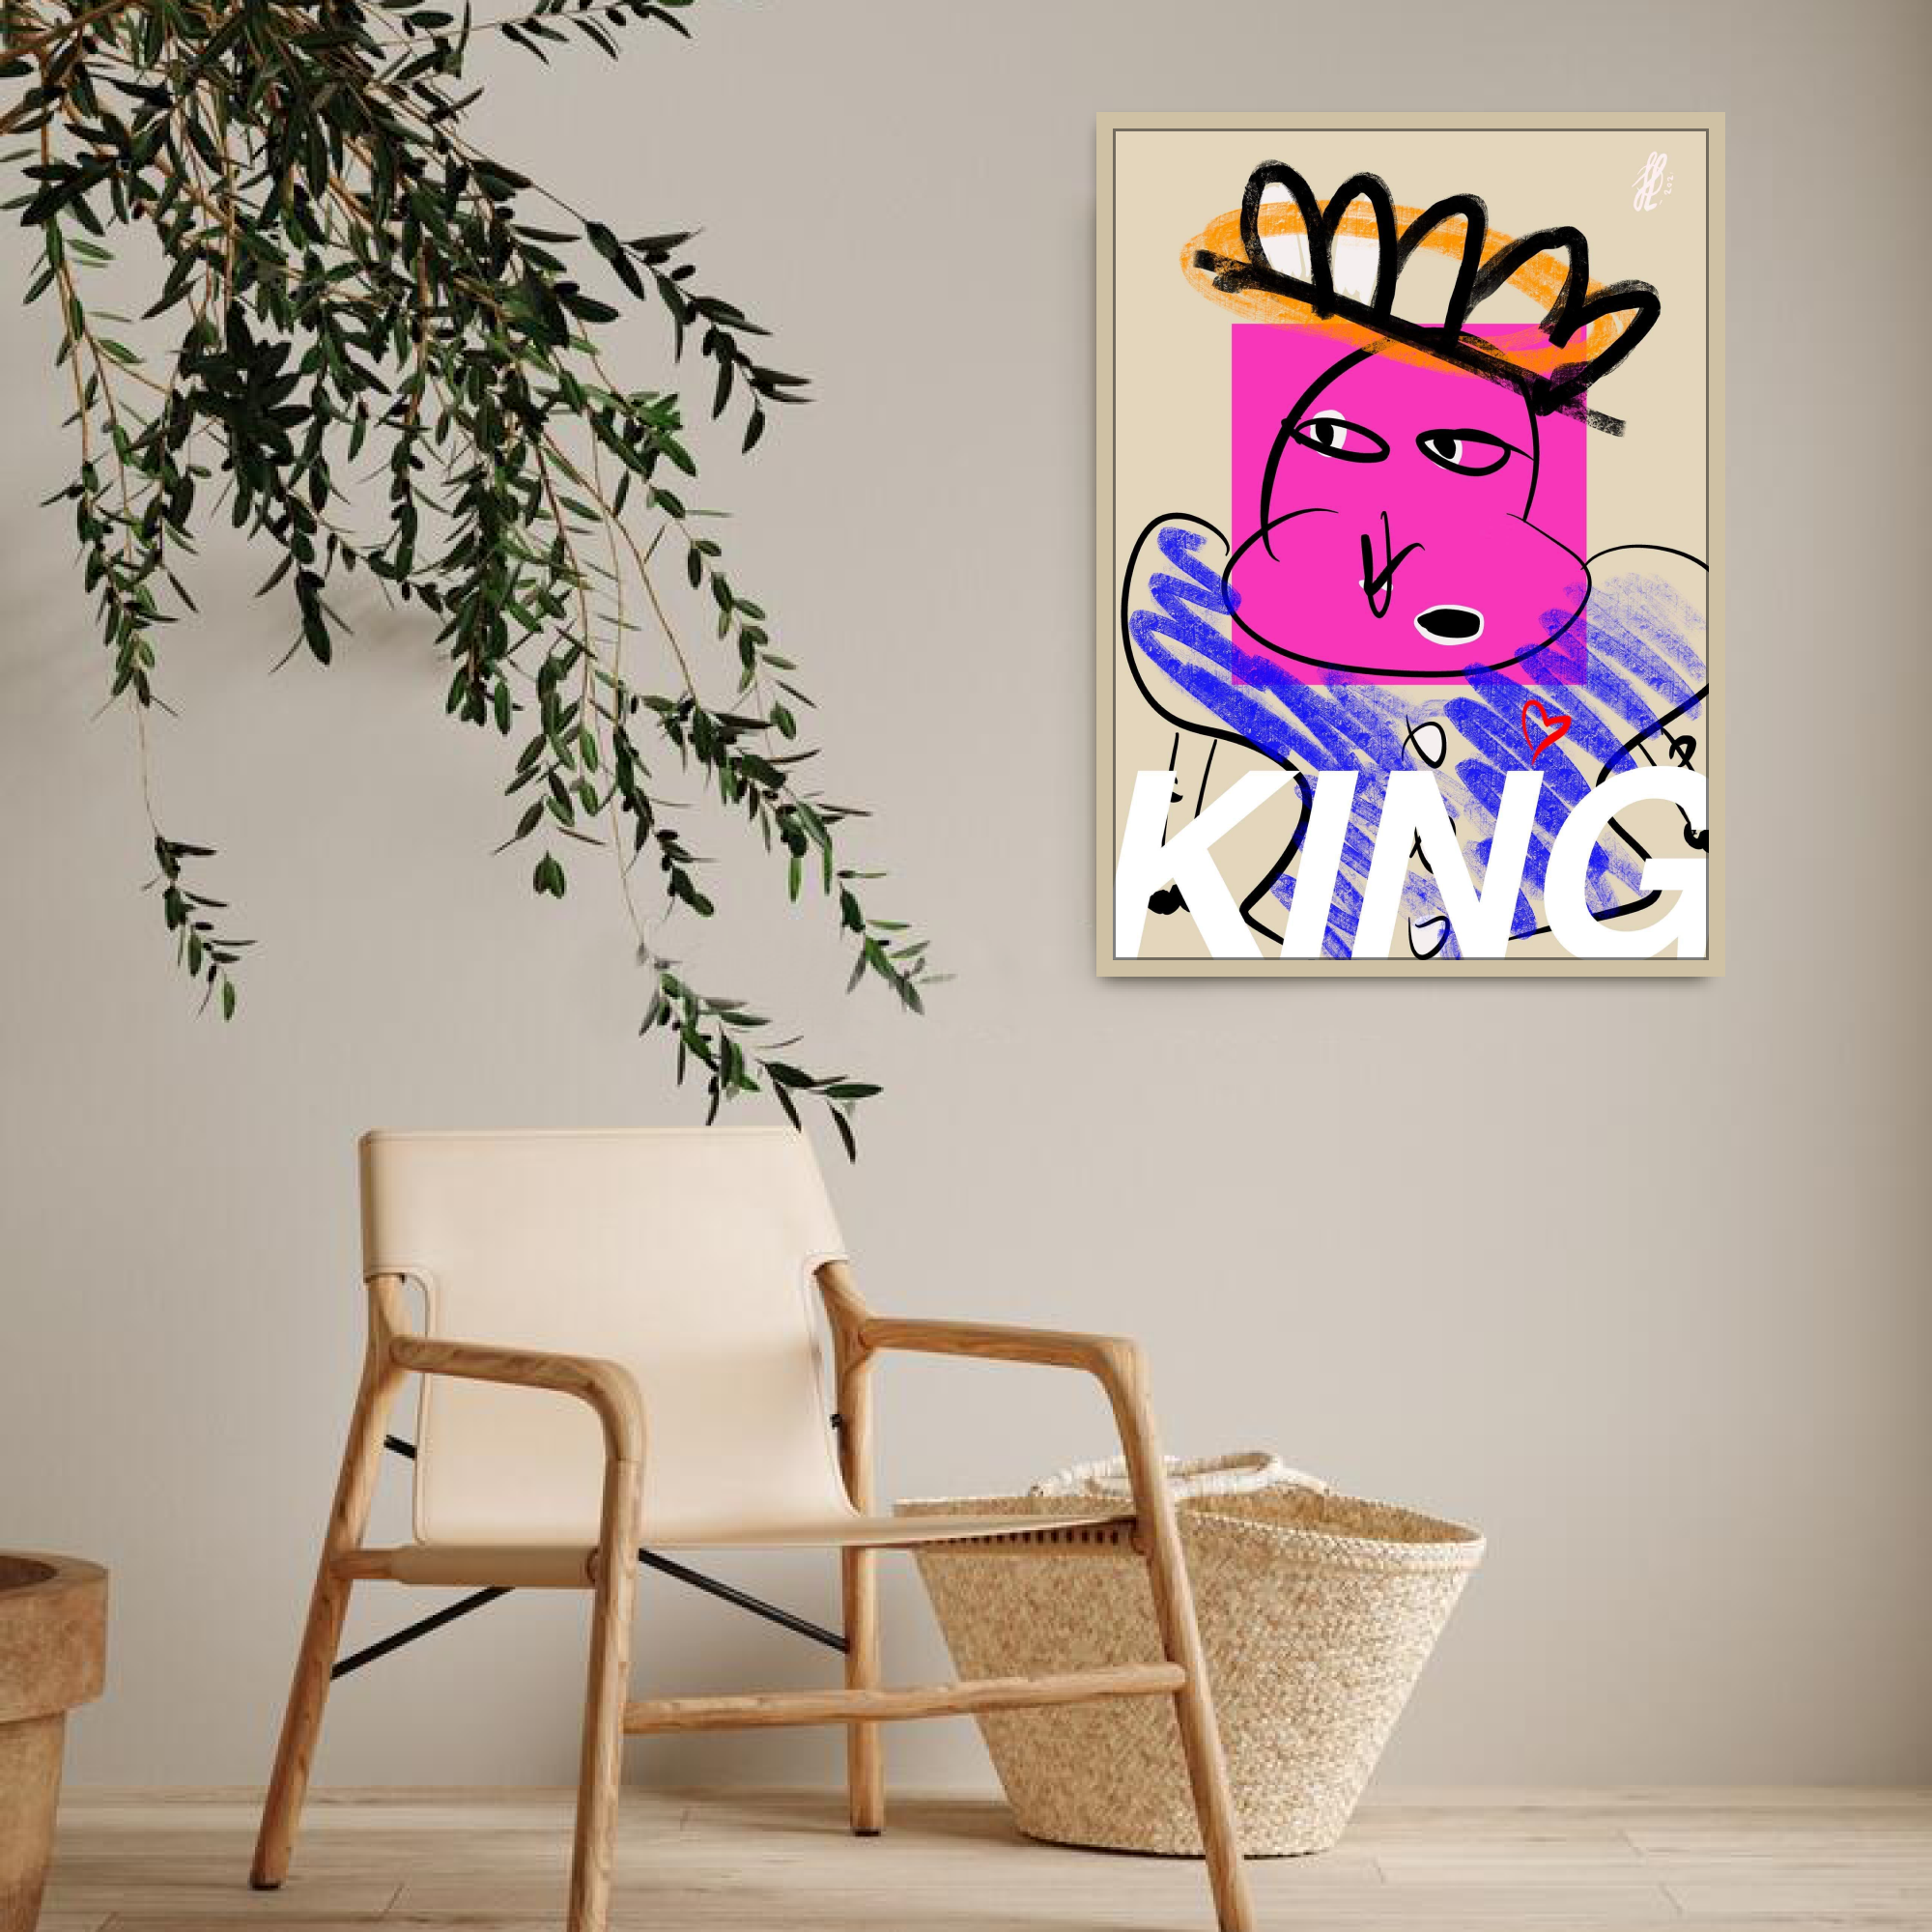 Poster: "King"